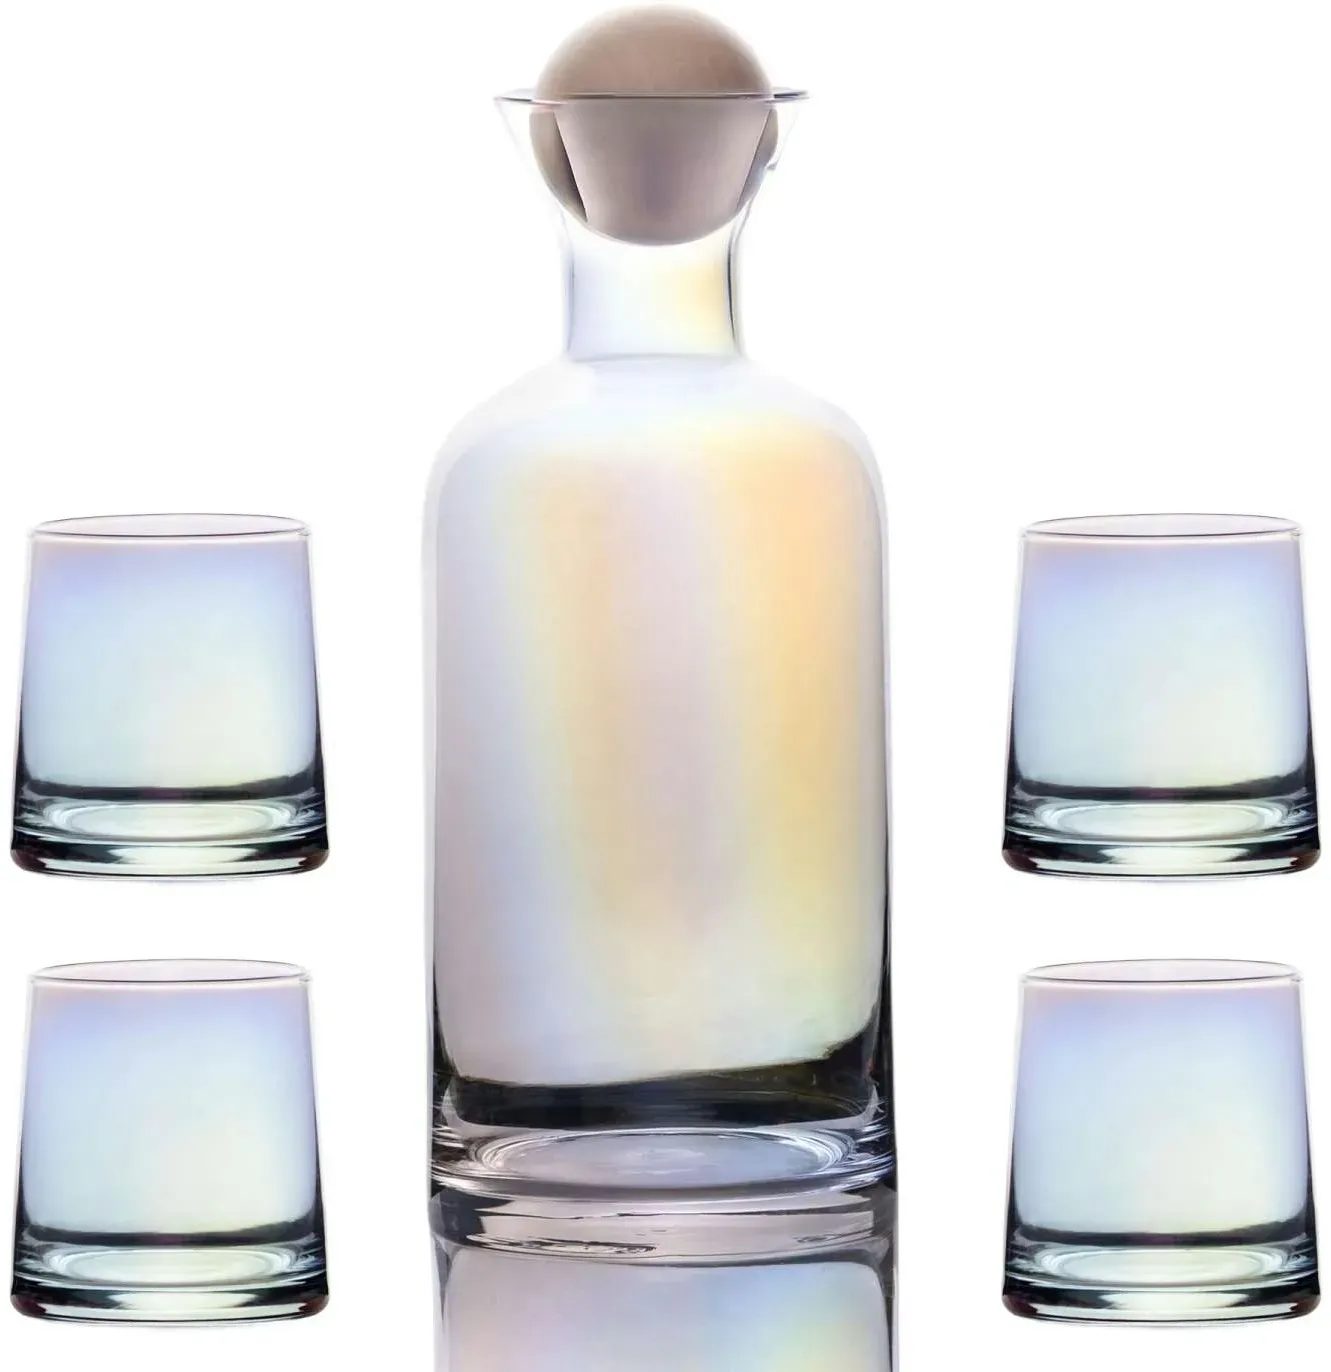 Intirilife Karaffe mit 4 Gläsern Set aus Glas mit Regenbogen Schimmer - Karaffe 1.1 Liter - Gläser 200 ml - Geschenk Set Kanne Krug mit Balldeckel